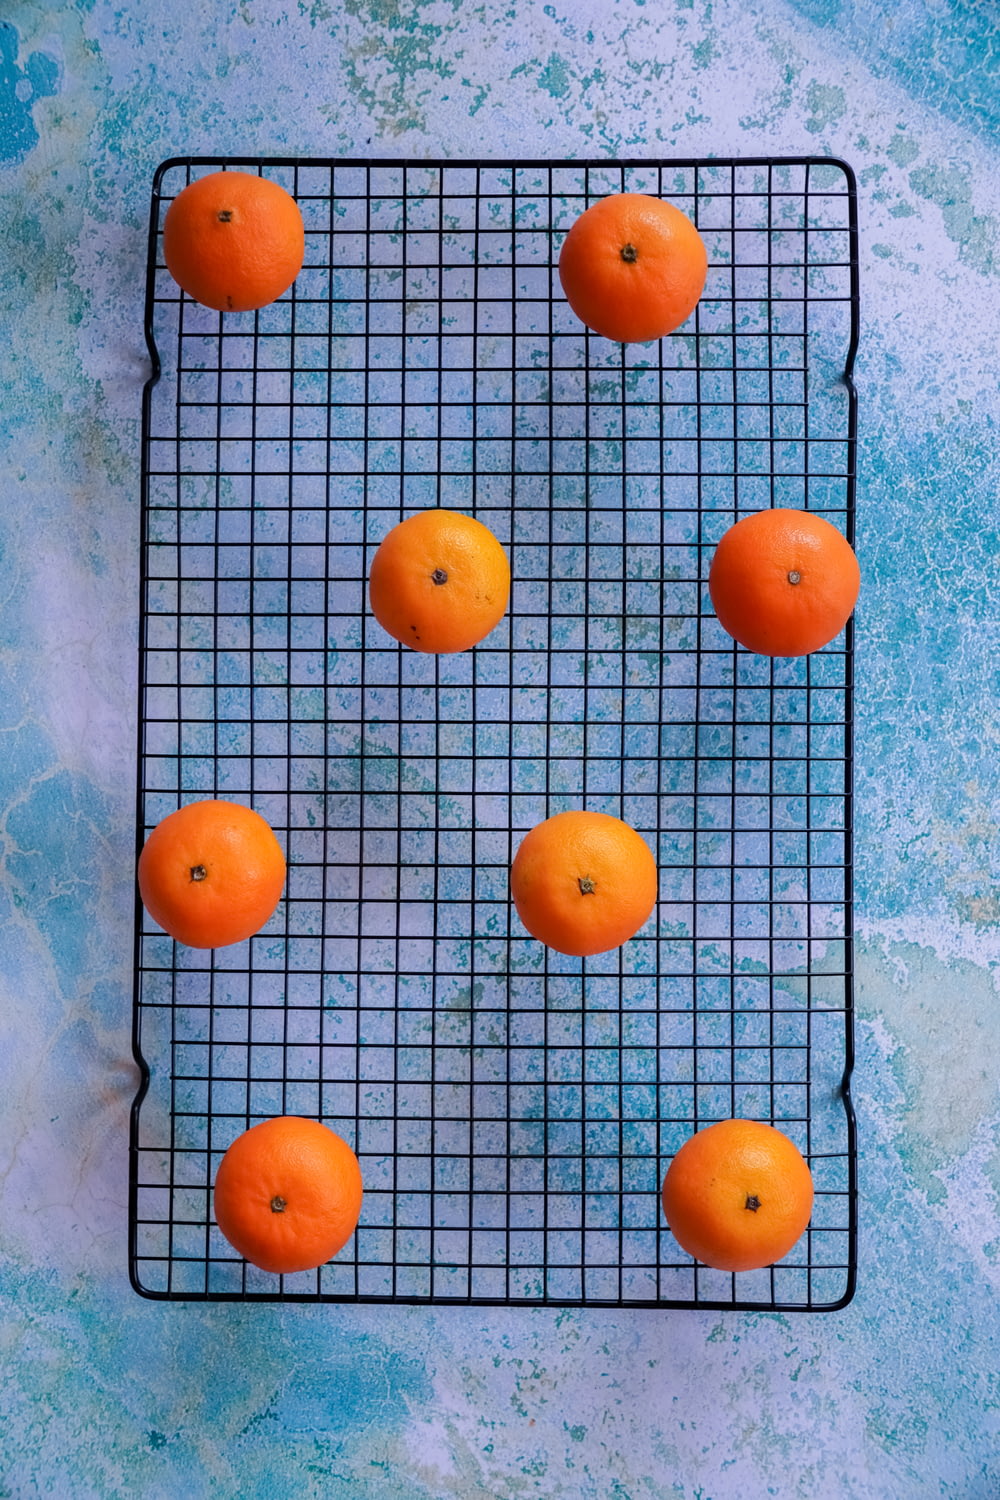 orange fruits on blue table